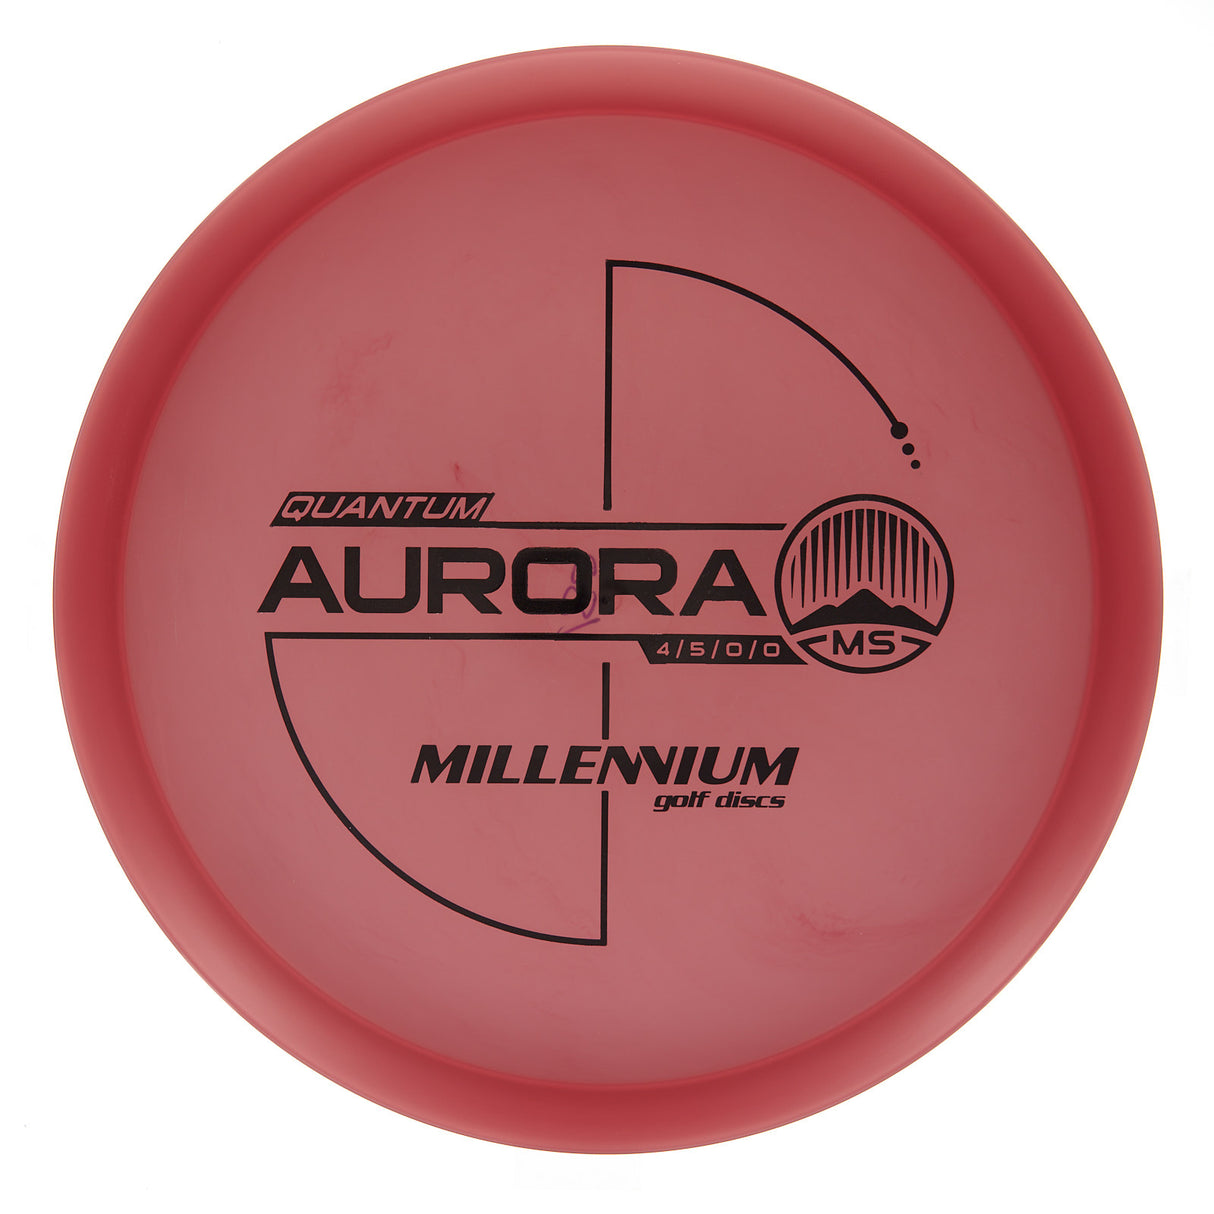 Millennium Aurora MS - Quantum 180g | Style 0002